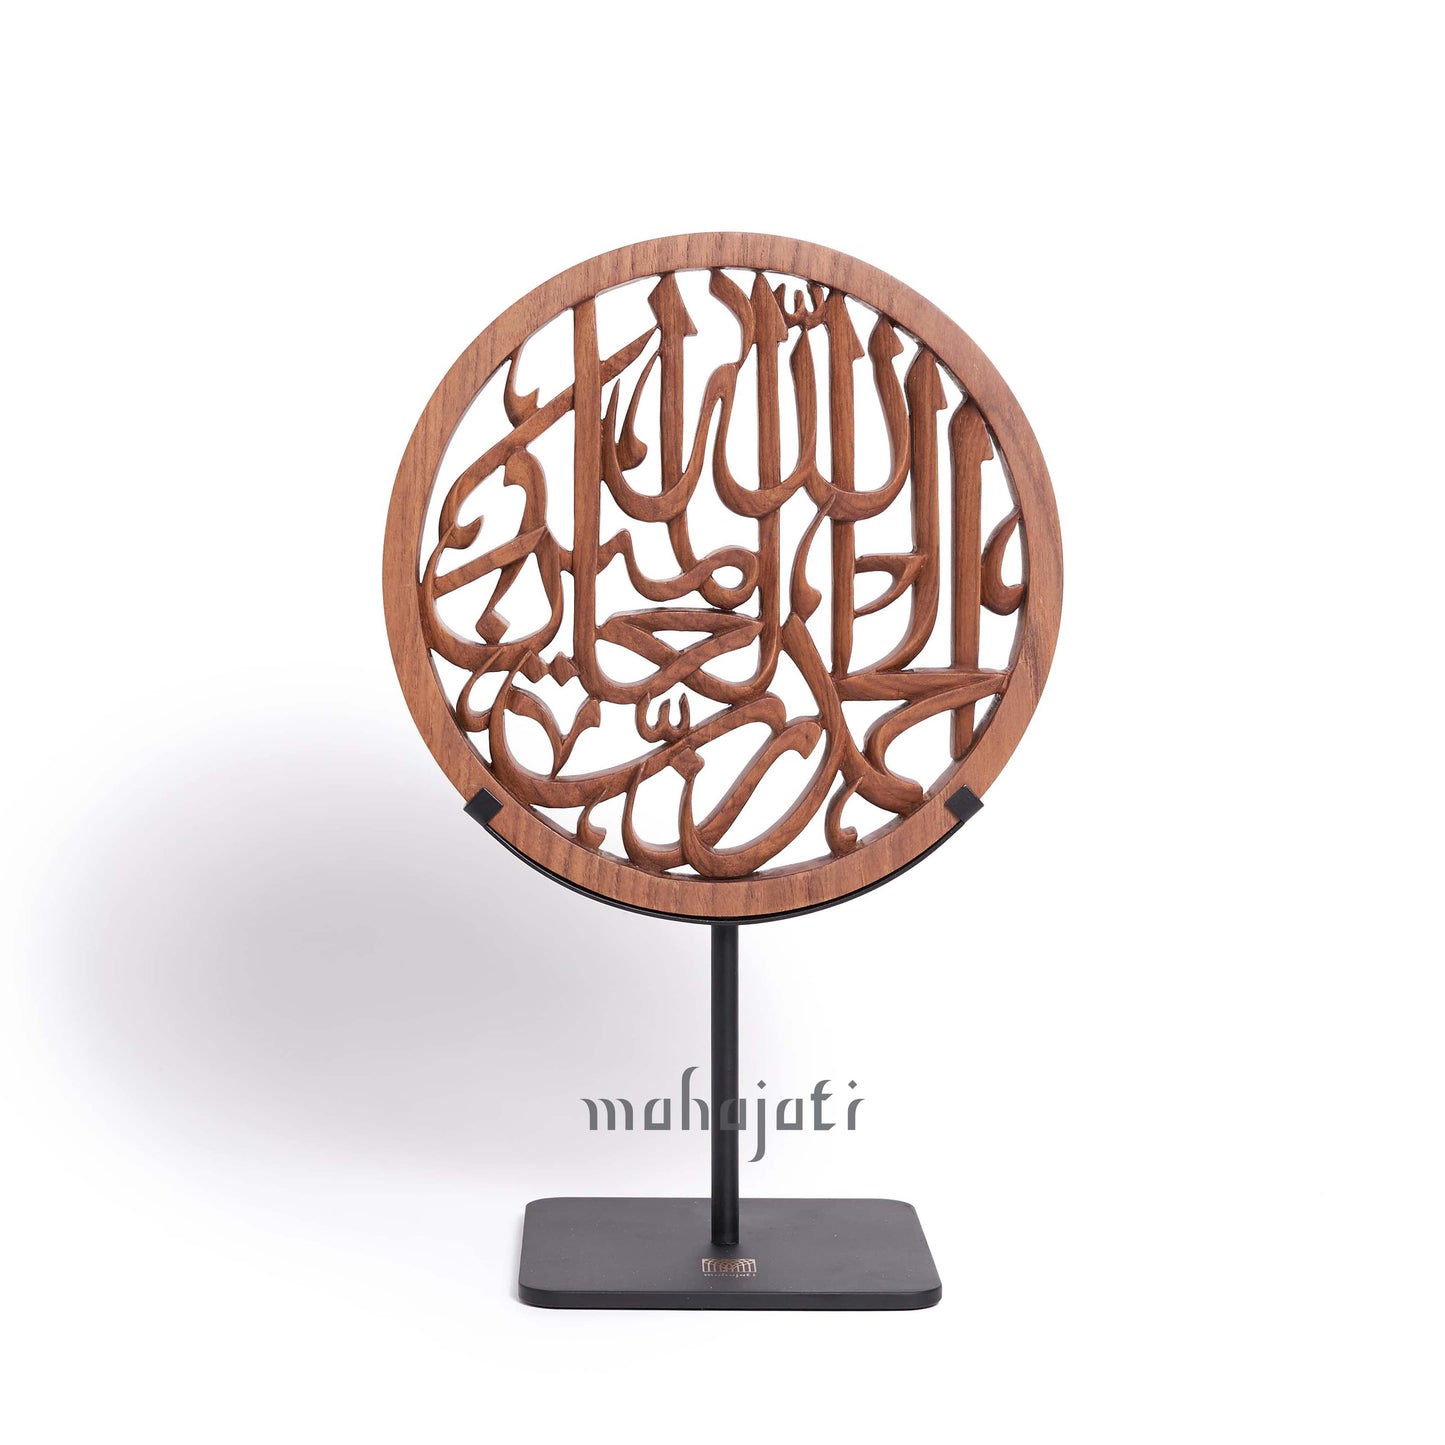 Alhamdulillah - Semi 3D - 20cm Diameter - Mahajati - Table Decor Art